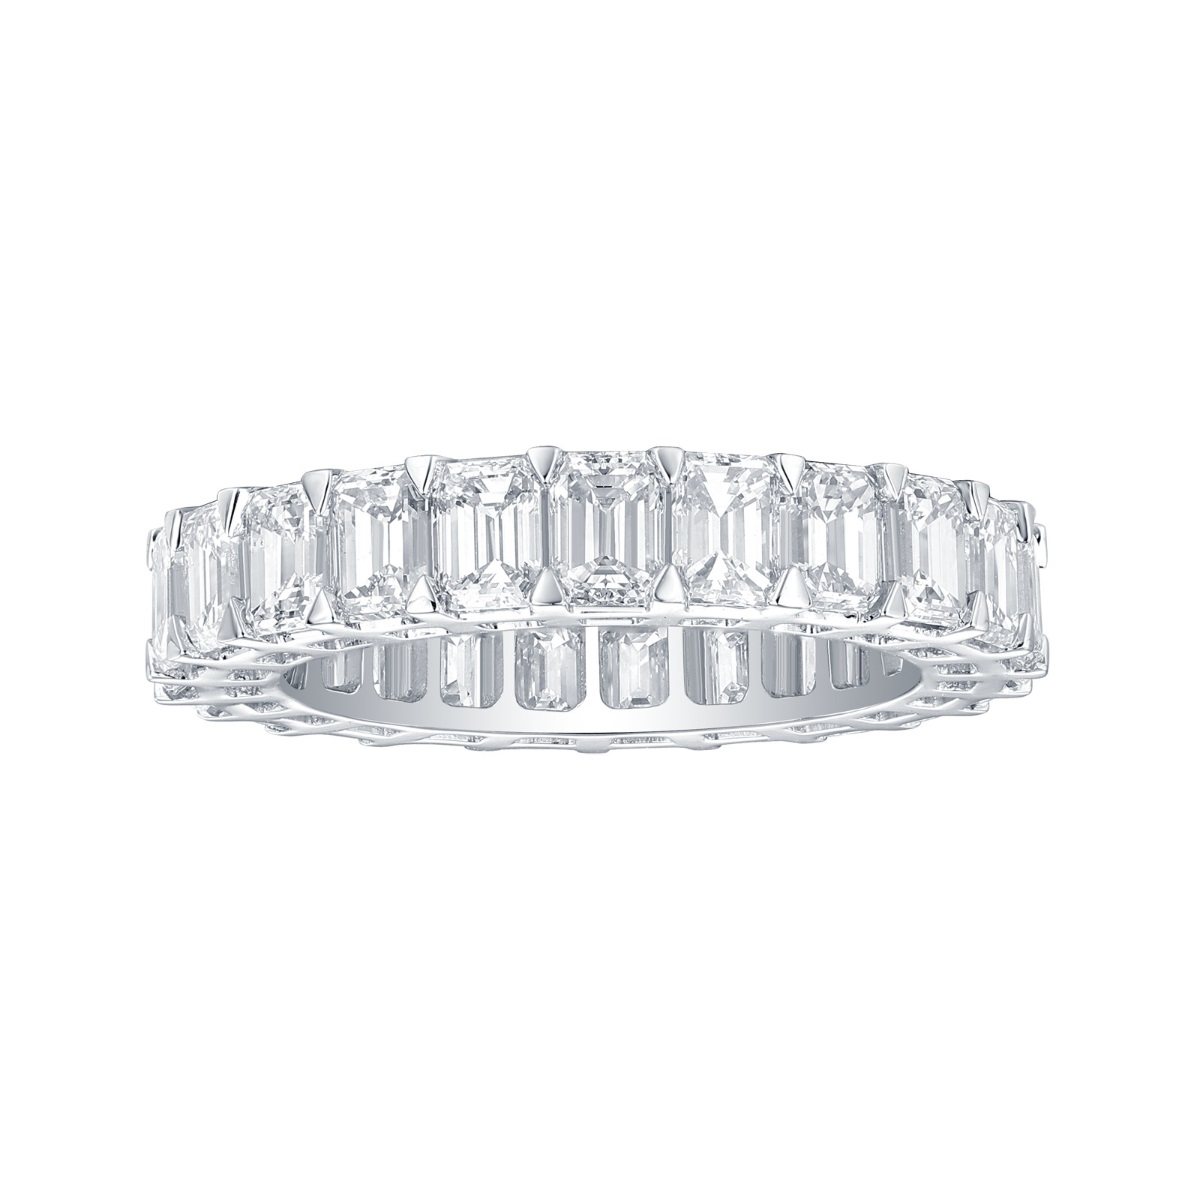 R36842WHT – 18K White Gold Diamond Ring, 5.64 TCW